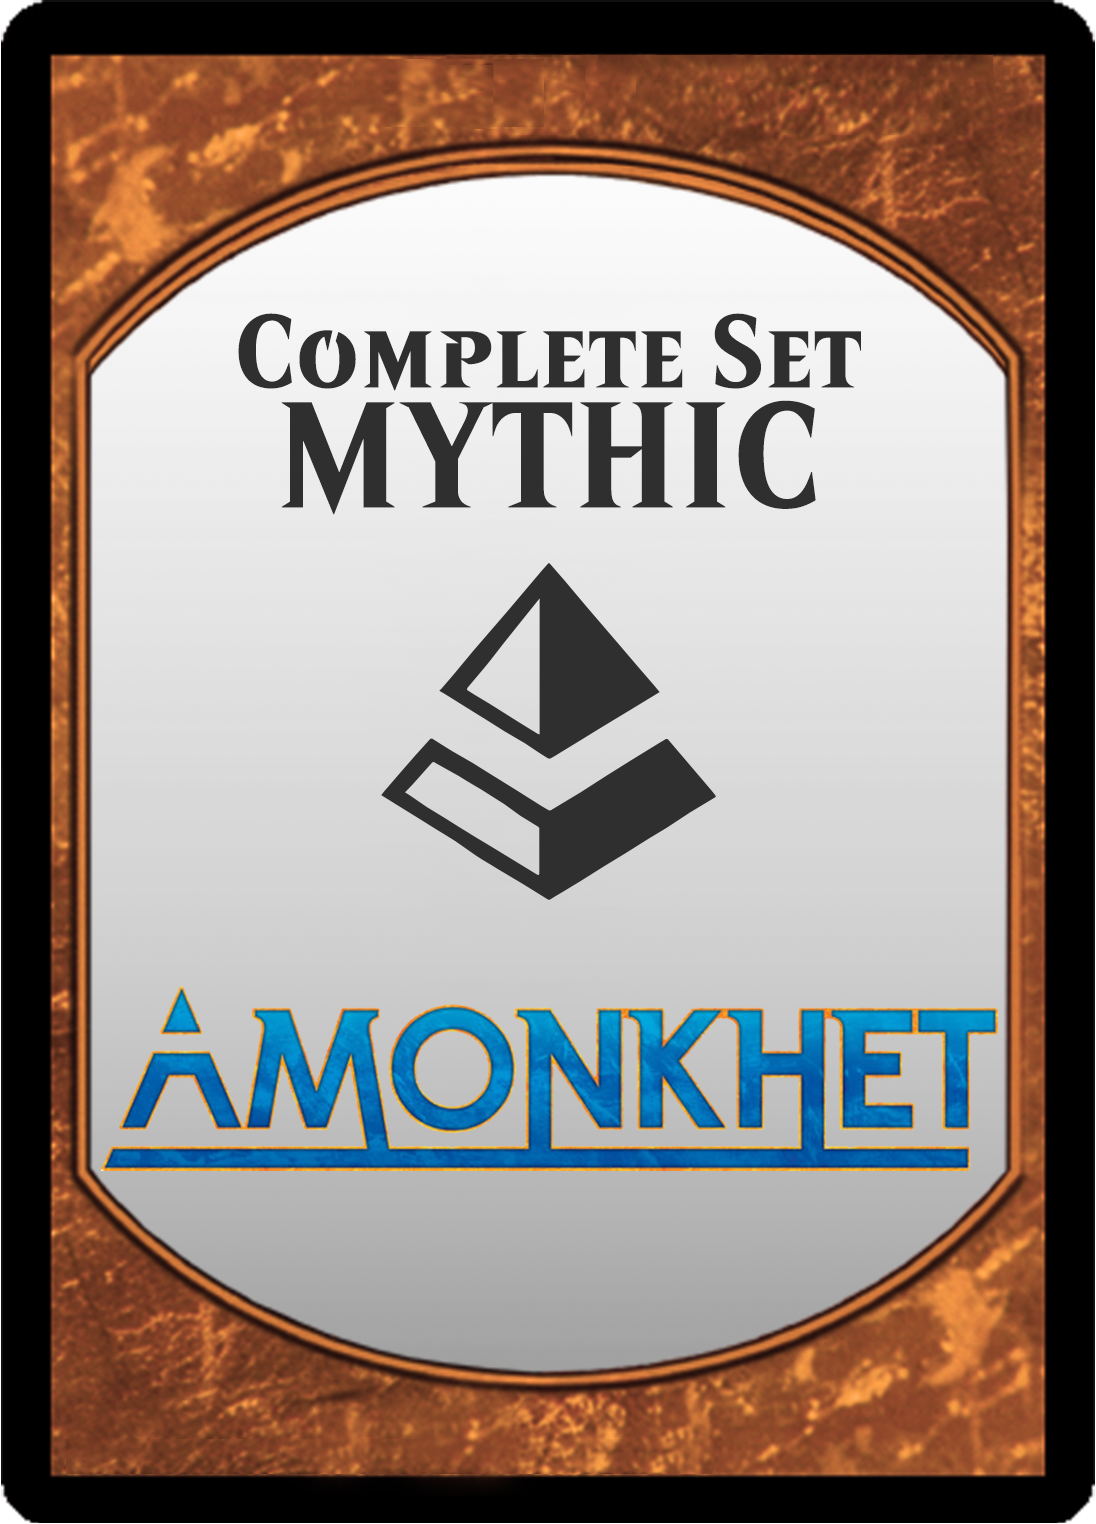 Amonkhet Mythic Set